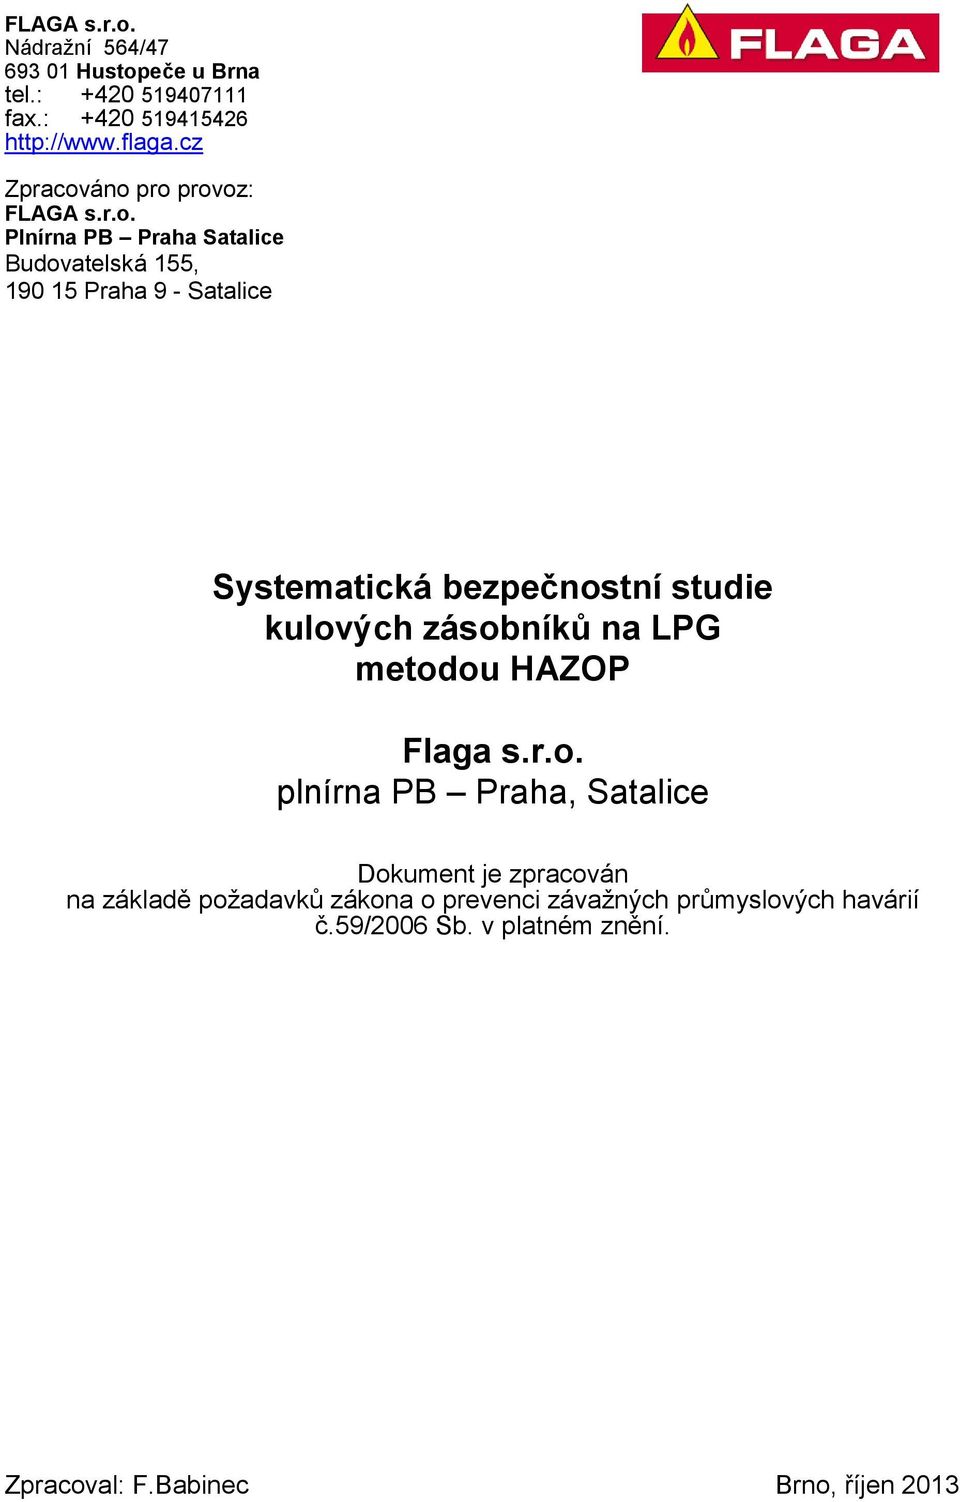 áno pro provoz: FLAGA s.r.o. Plnírna PB Praha Satalice Budovatelská 155, 190 15 Praha 9 - Satalice Systematická